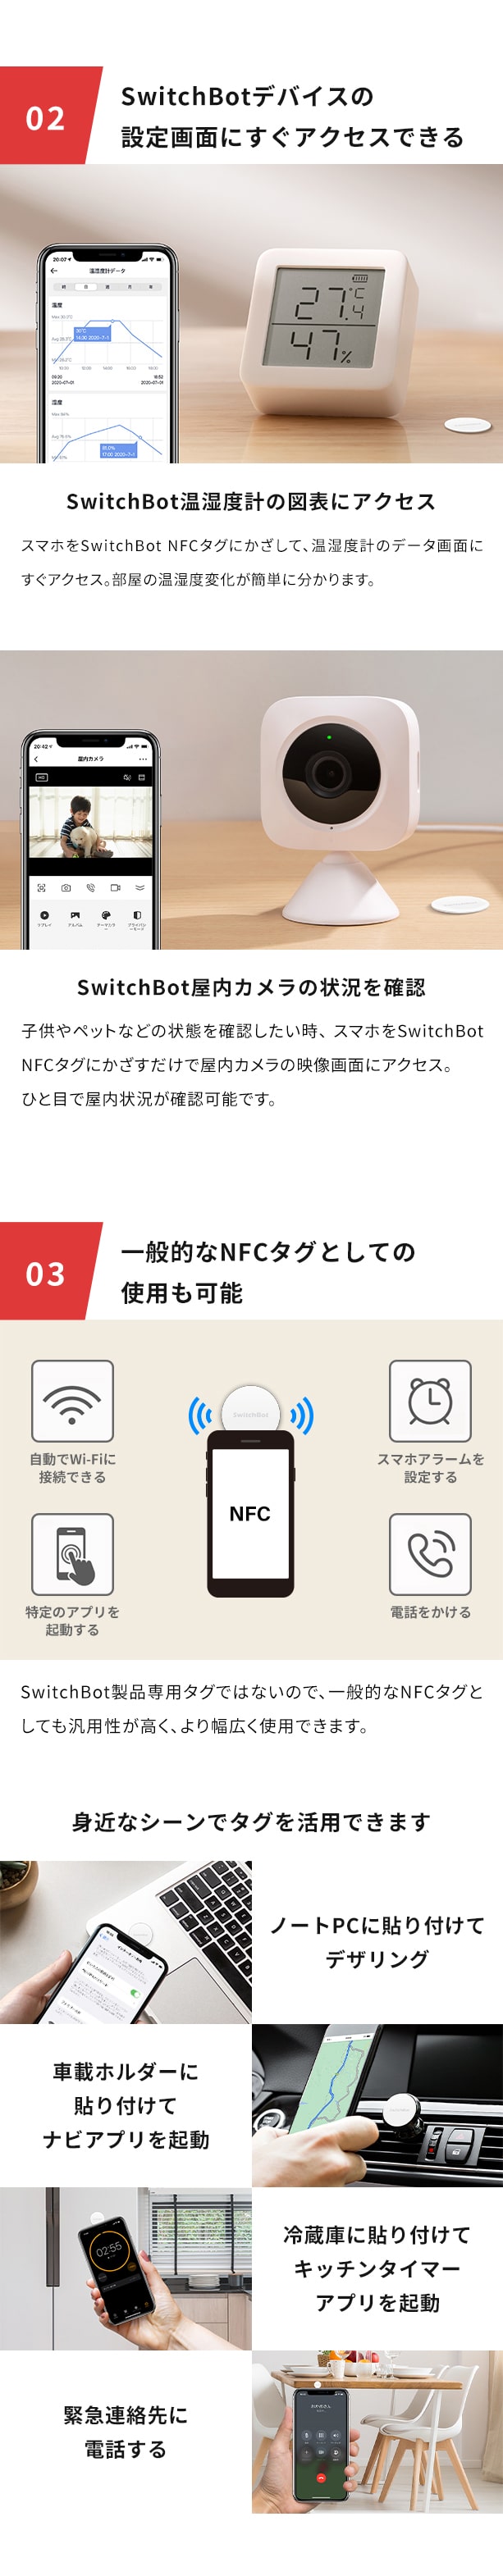 スマートリモコン NFCタグ 家電コントロール 遠隔操作